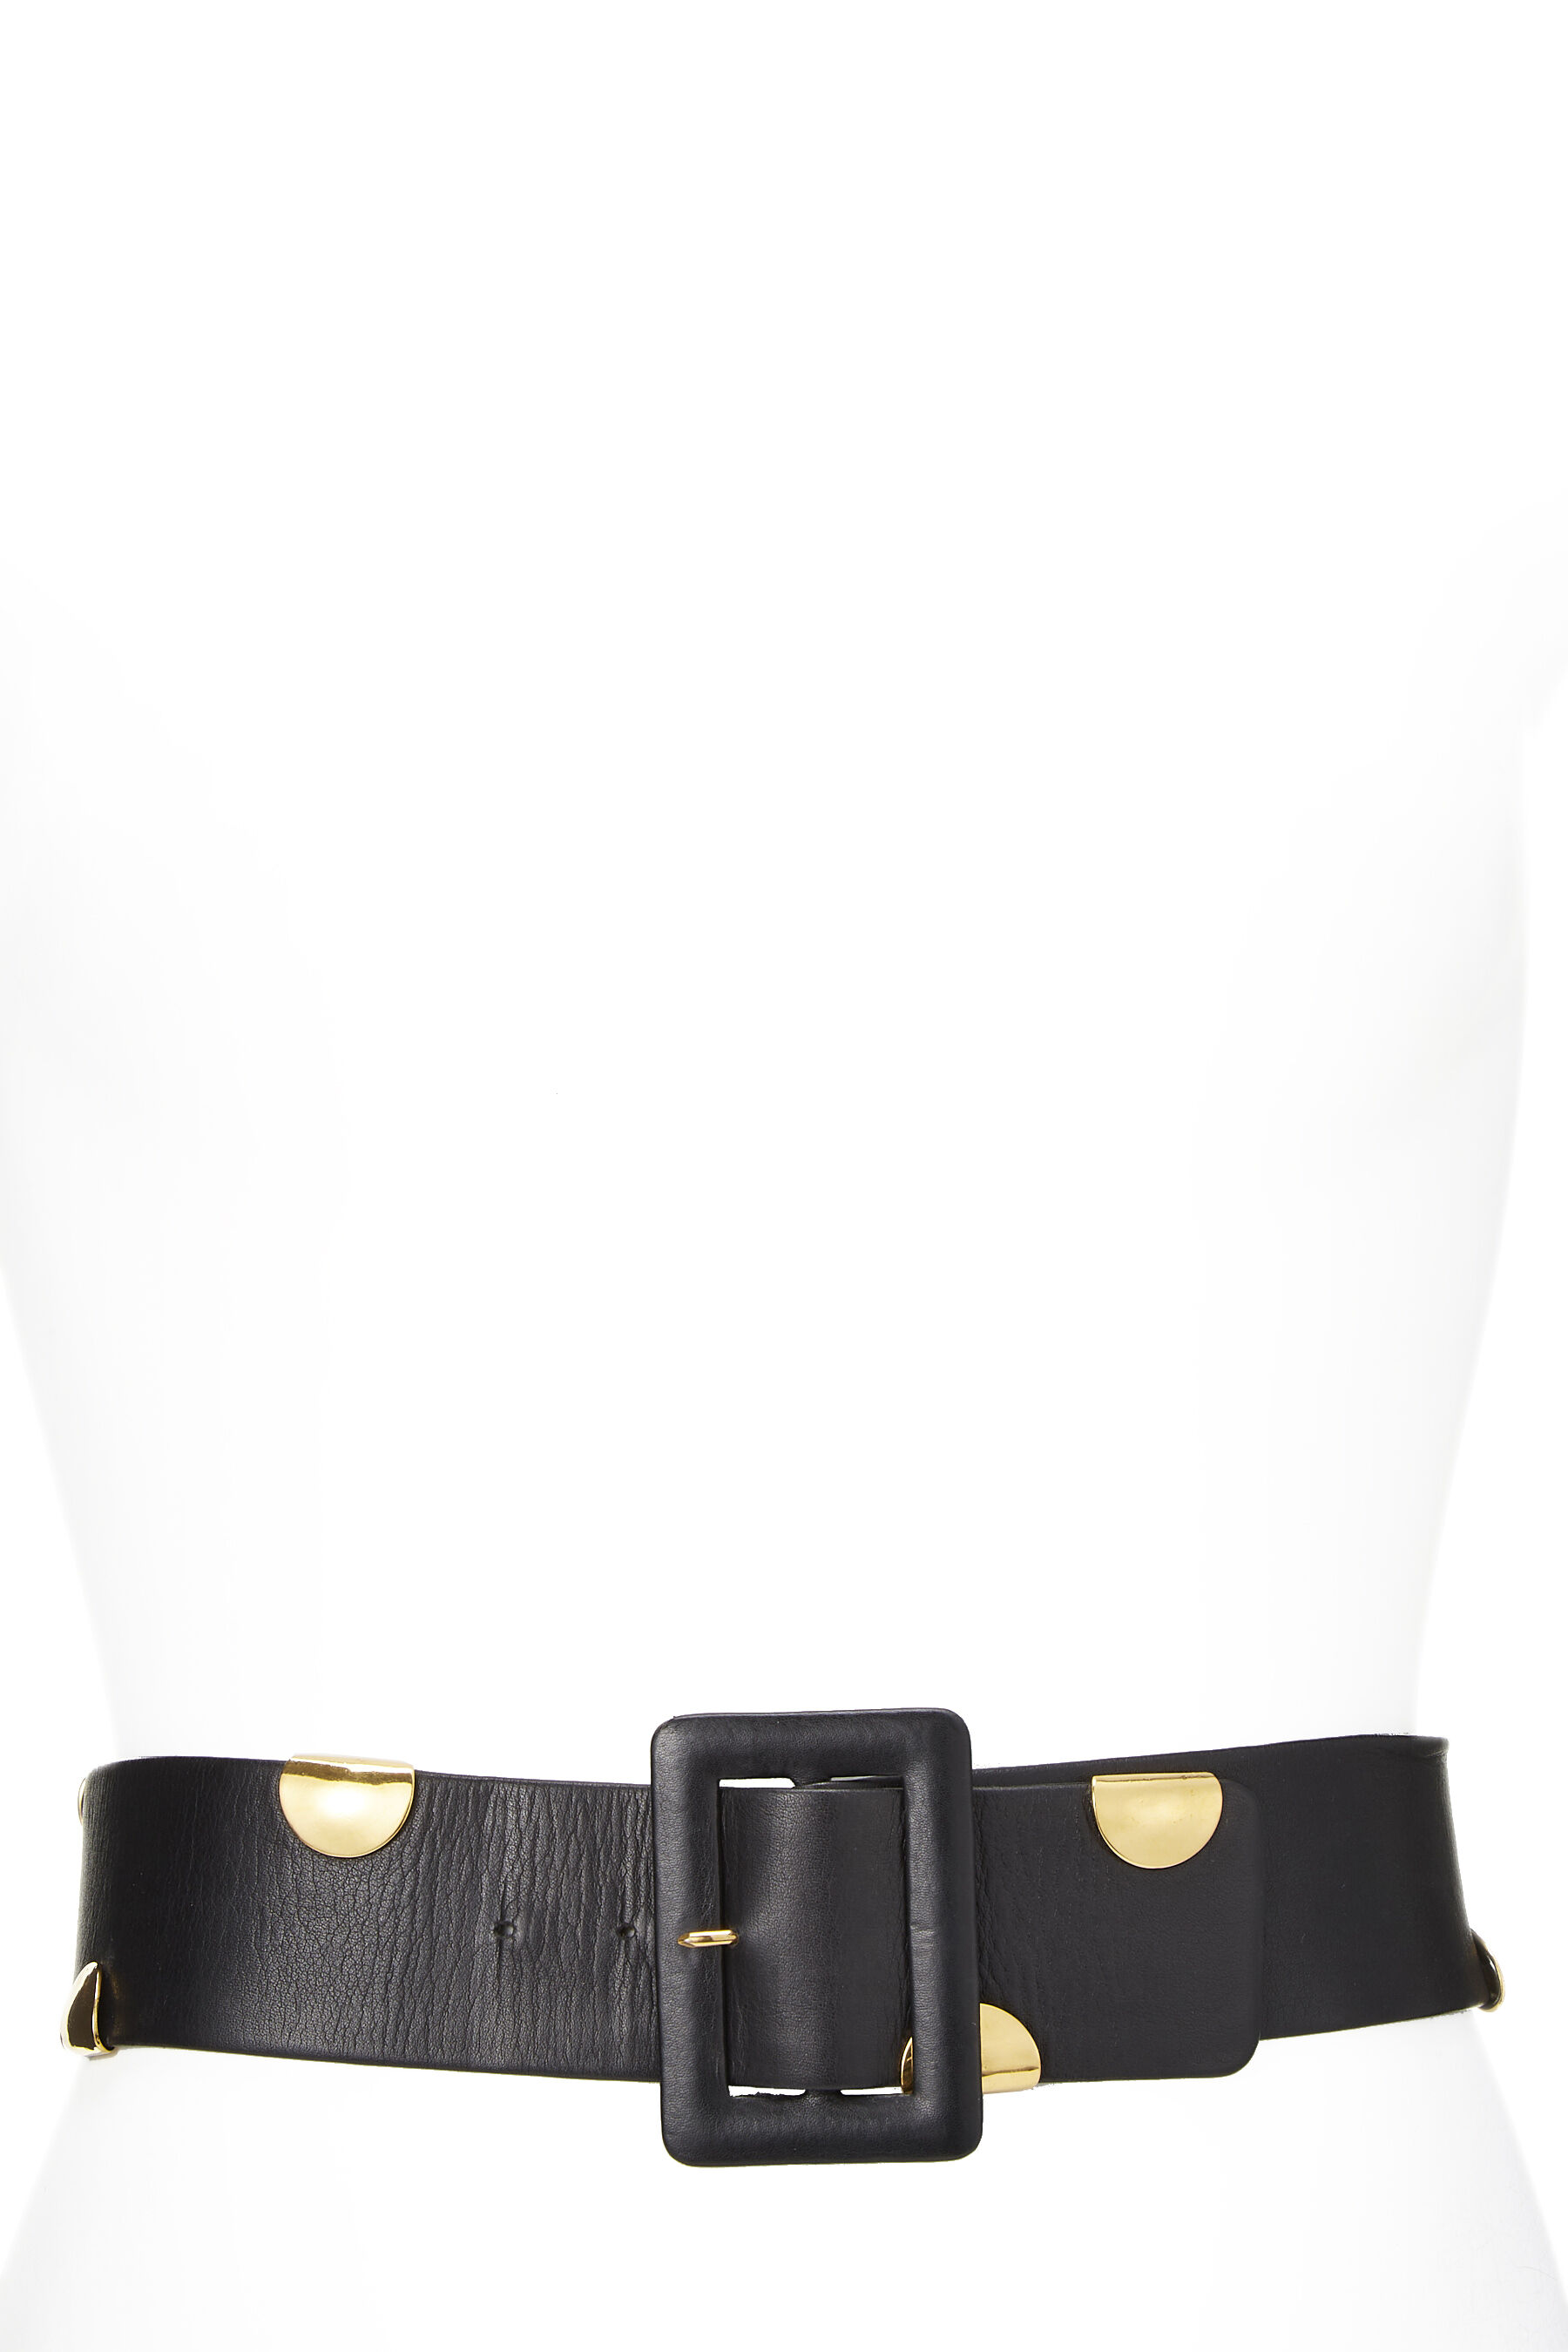 Chanel - Black Coin Embellished Leather Belt 70